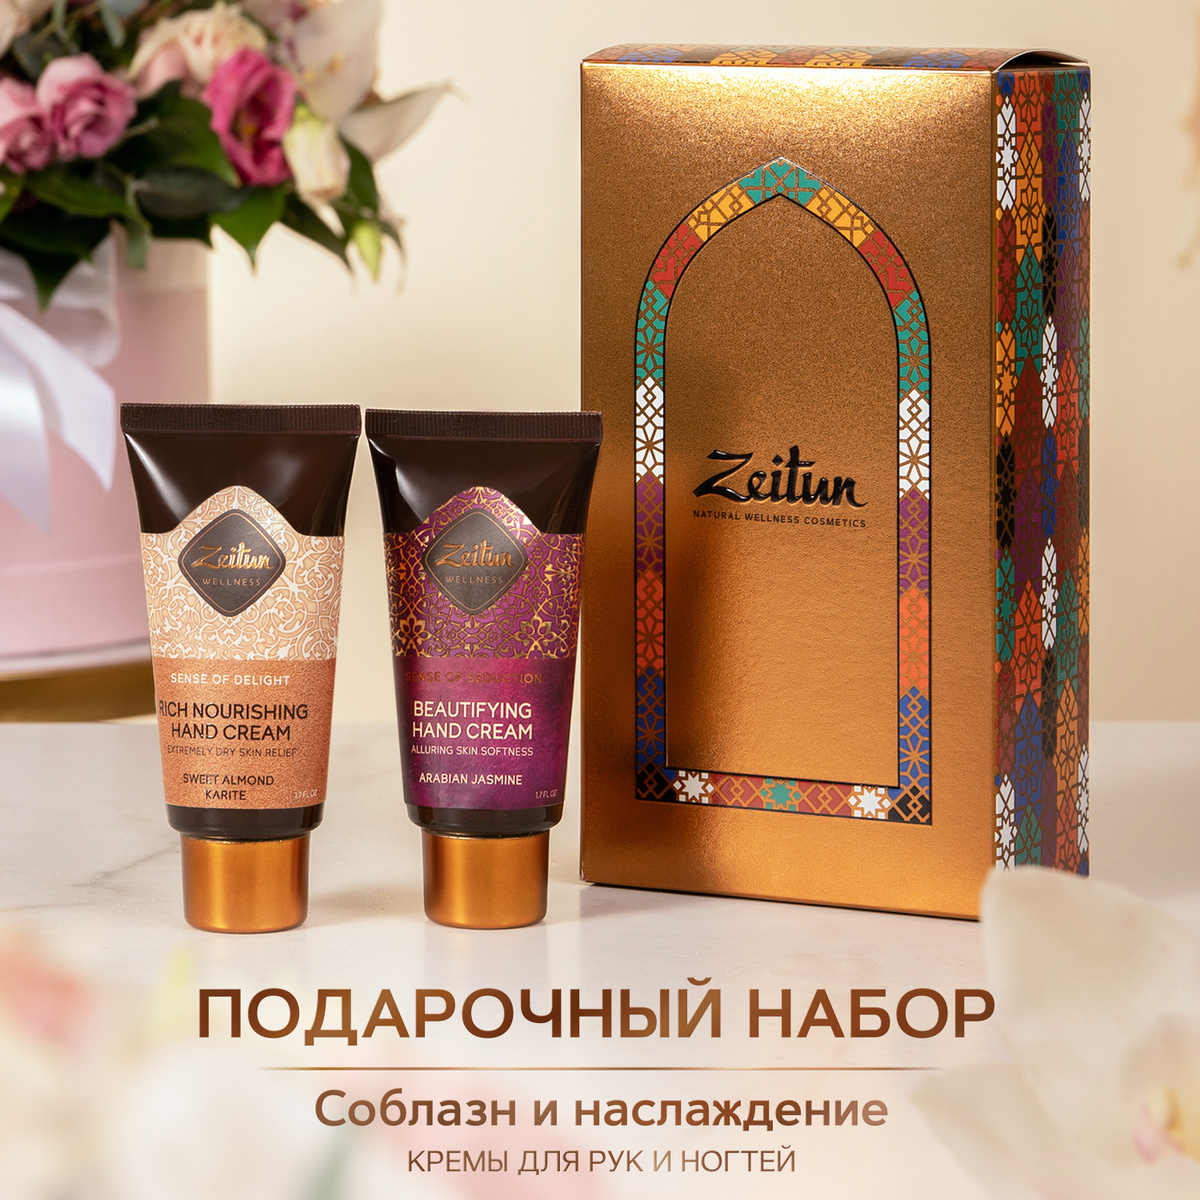 Zeitun Подарочный набор для женщин "Соблазн и наслаждение": крем для рук увлажняющий , крем для рук питательный #1